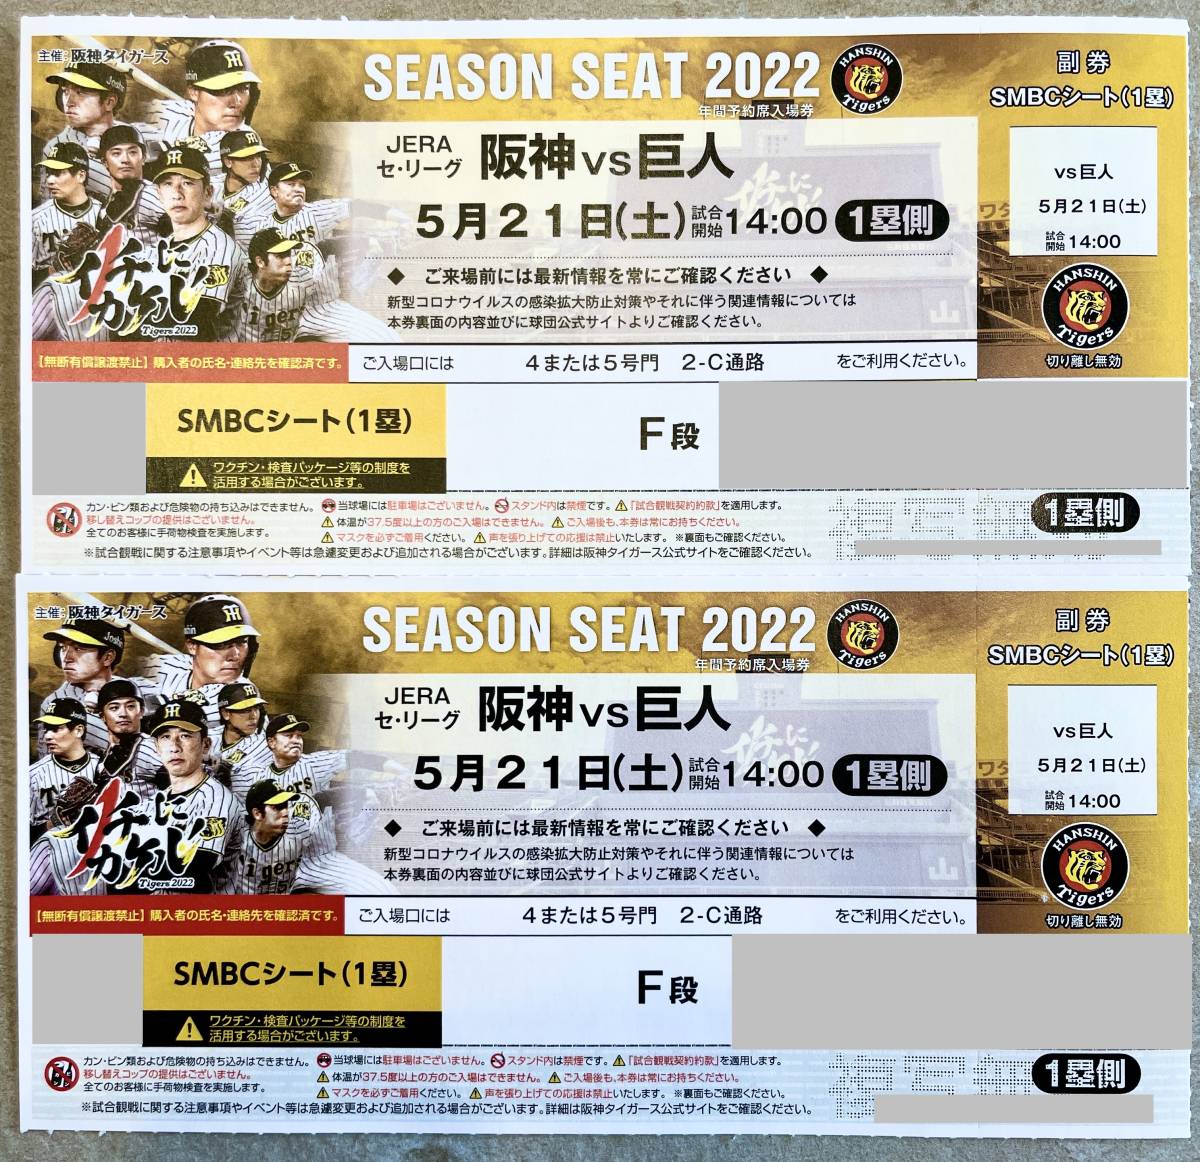 5月21日 土 阪神vs巨人 SMBCシート1塁側 F段 連番 ペアチケット 阪神 